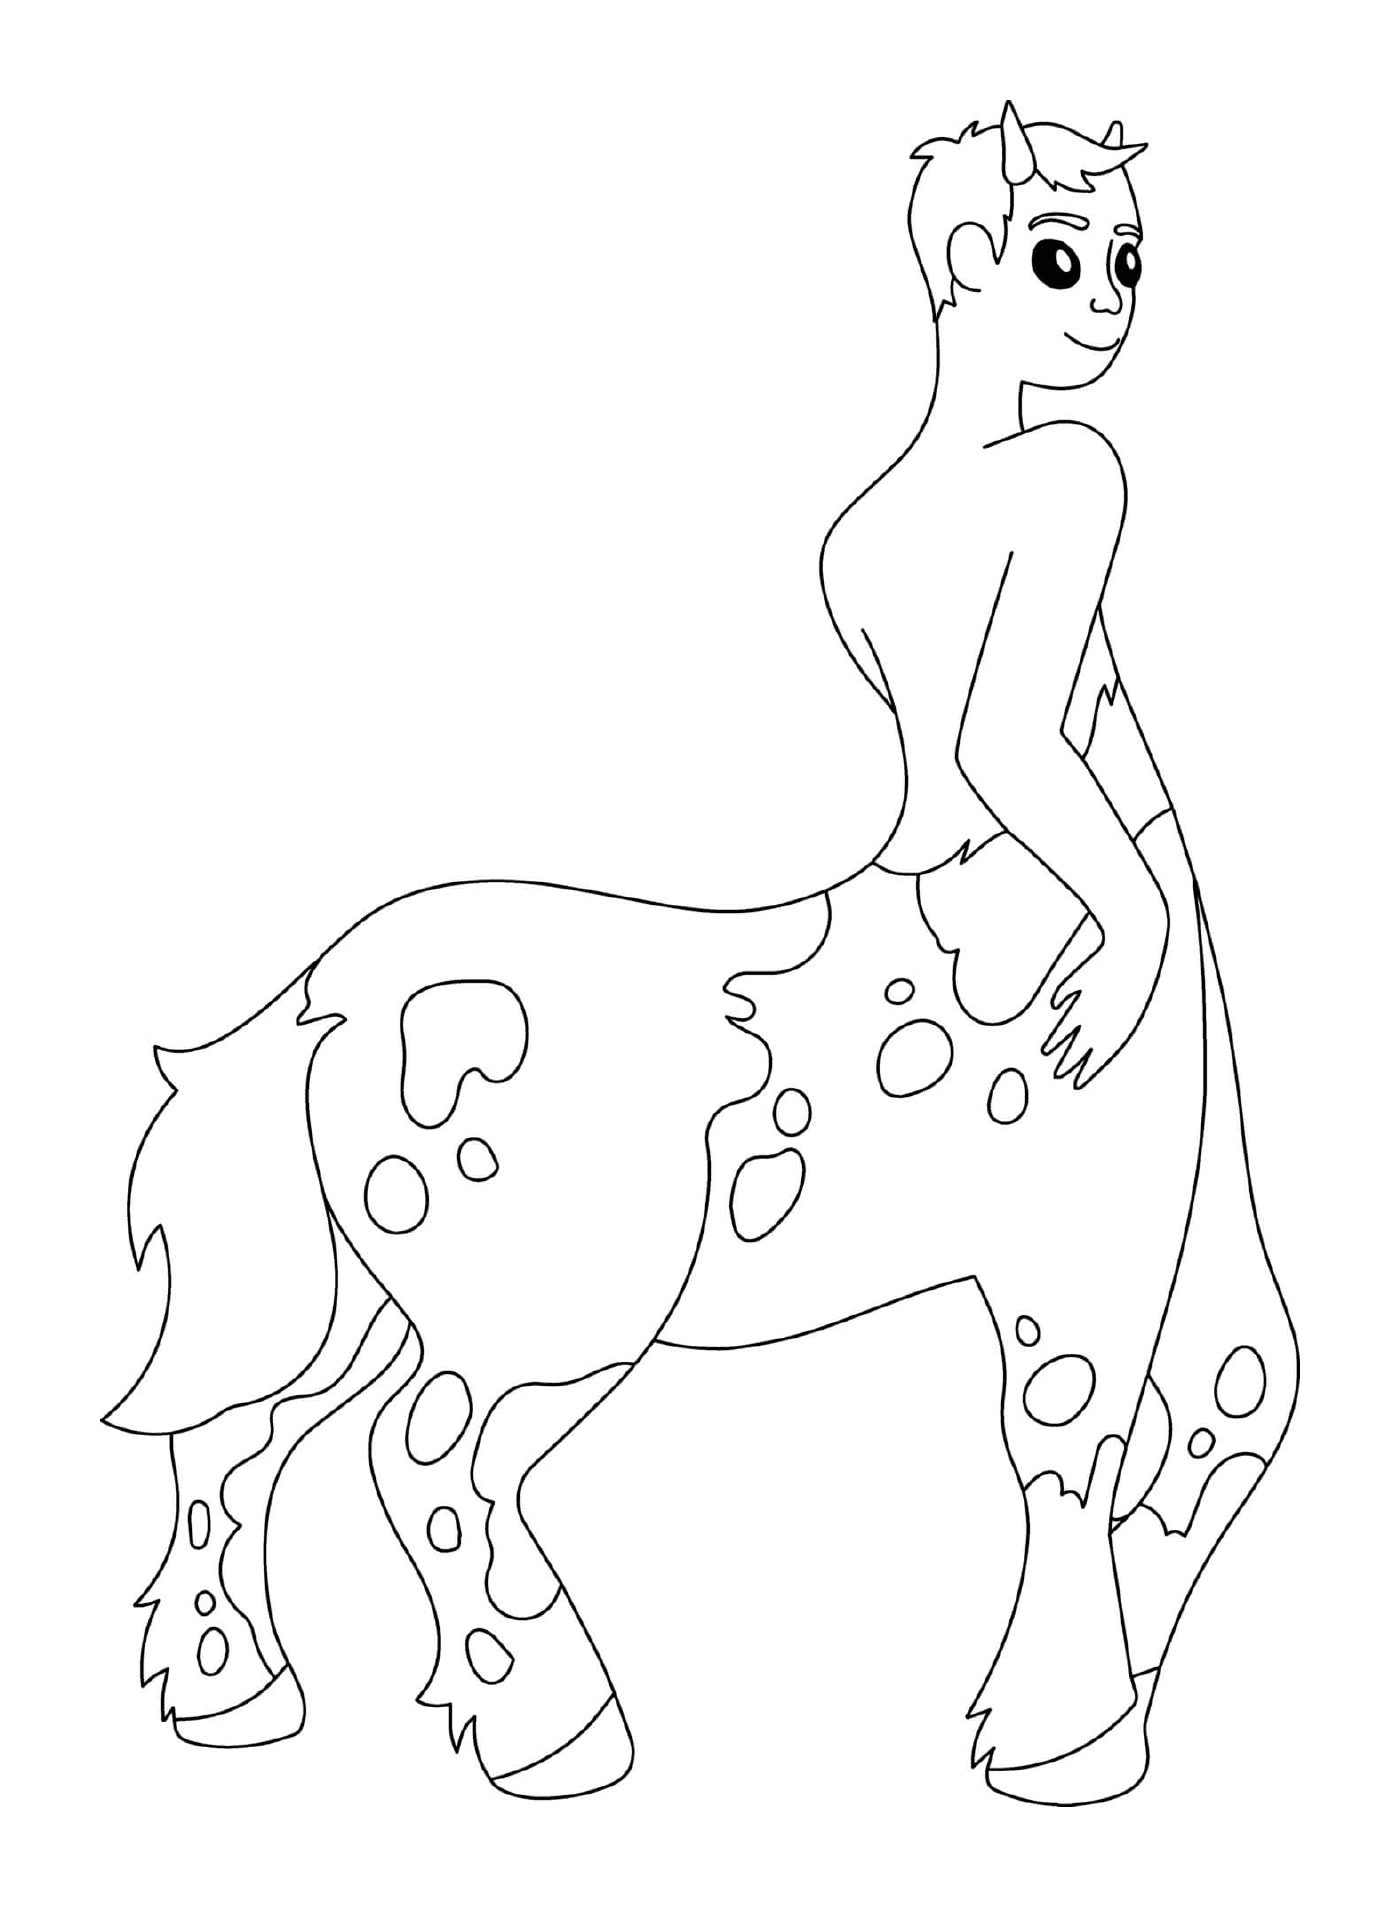  Centaur mitad-hombre mitad-caballo mitología griega 